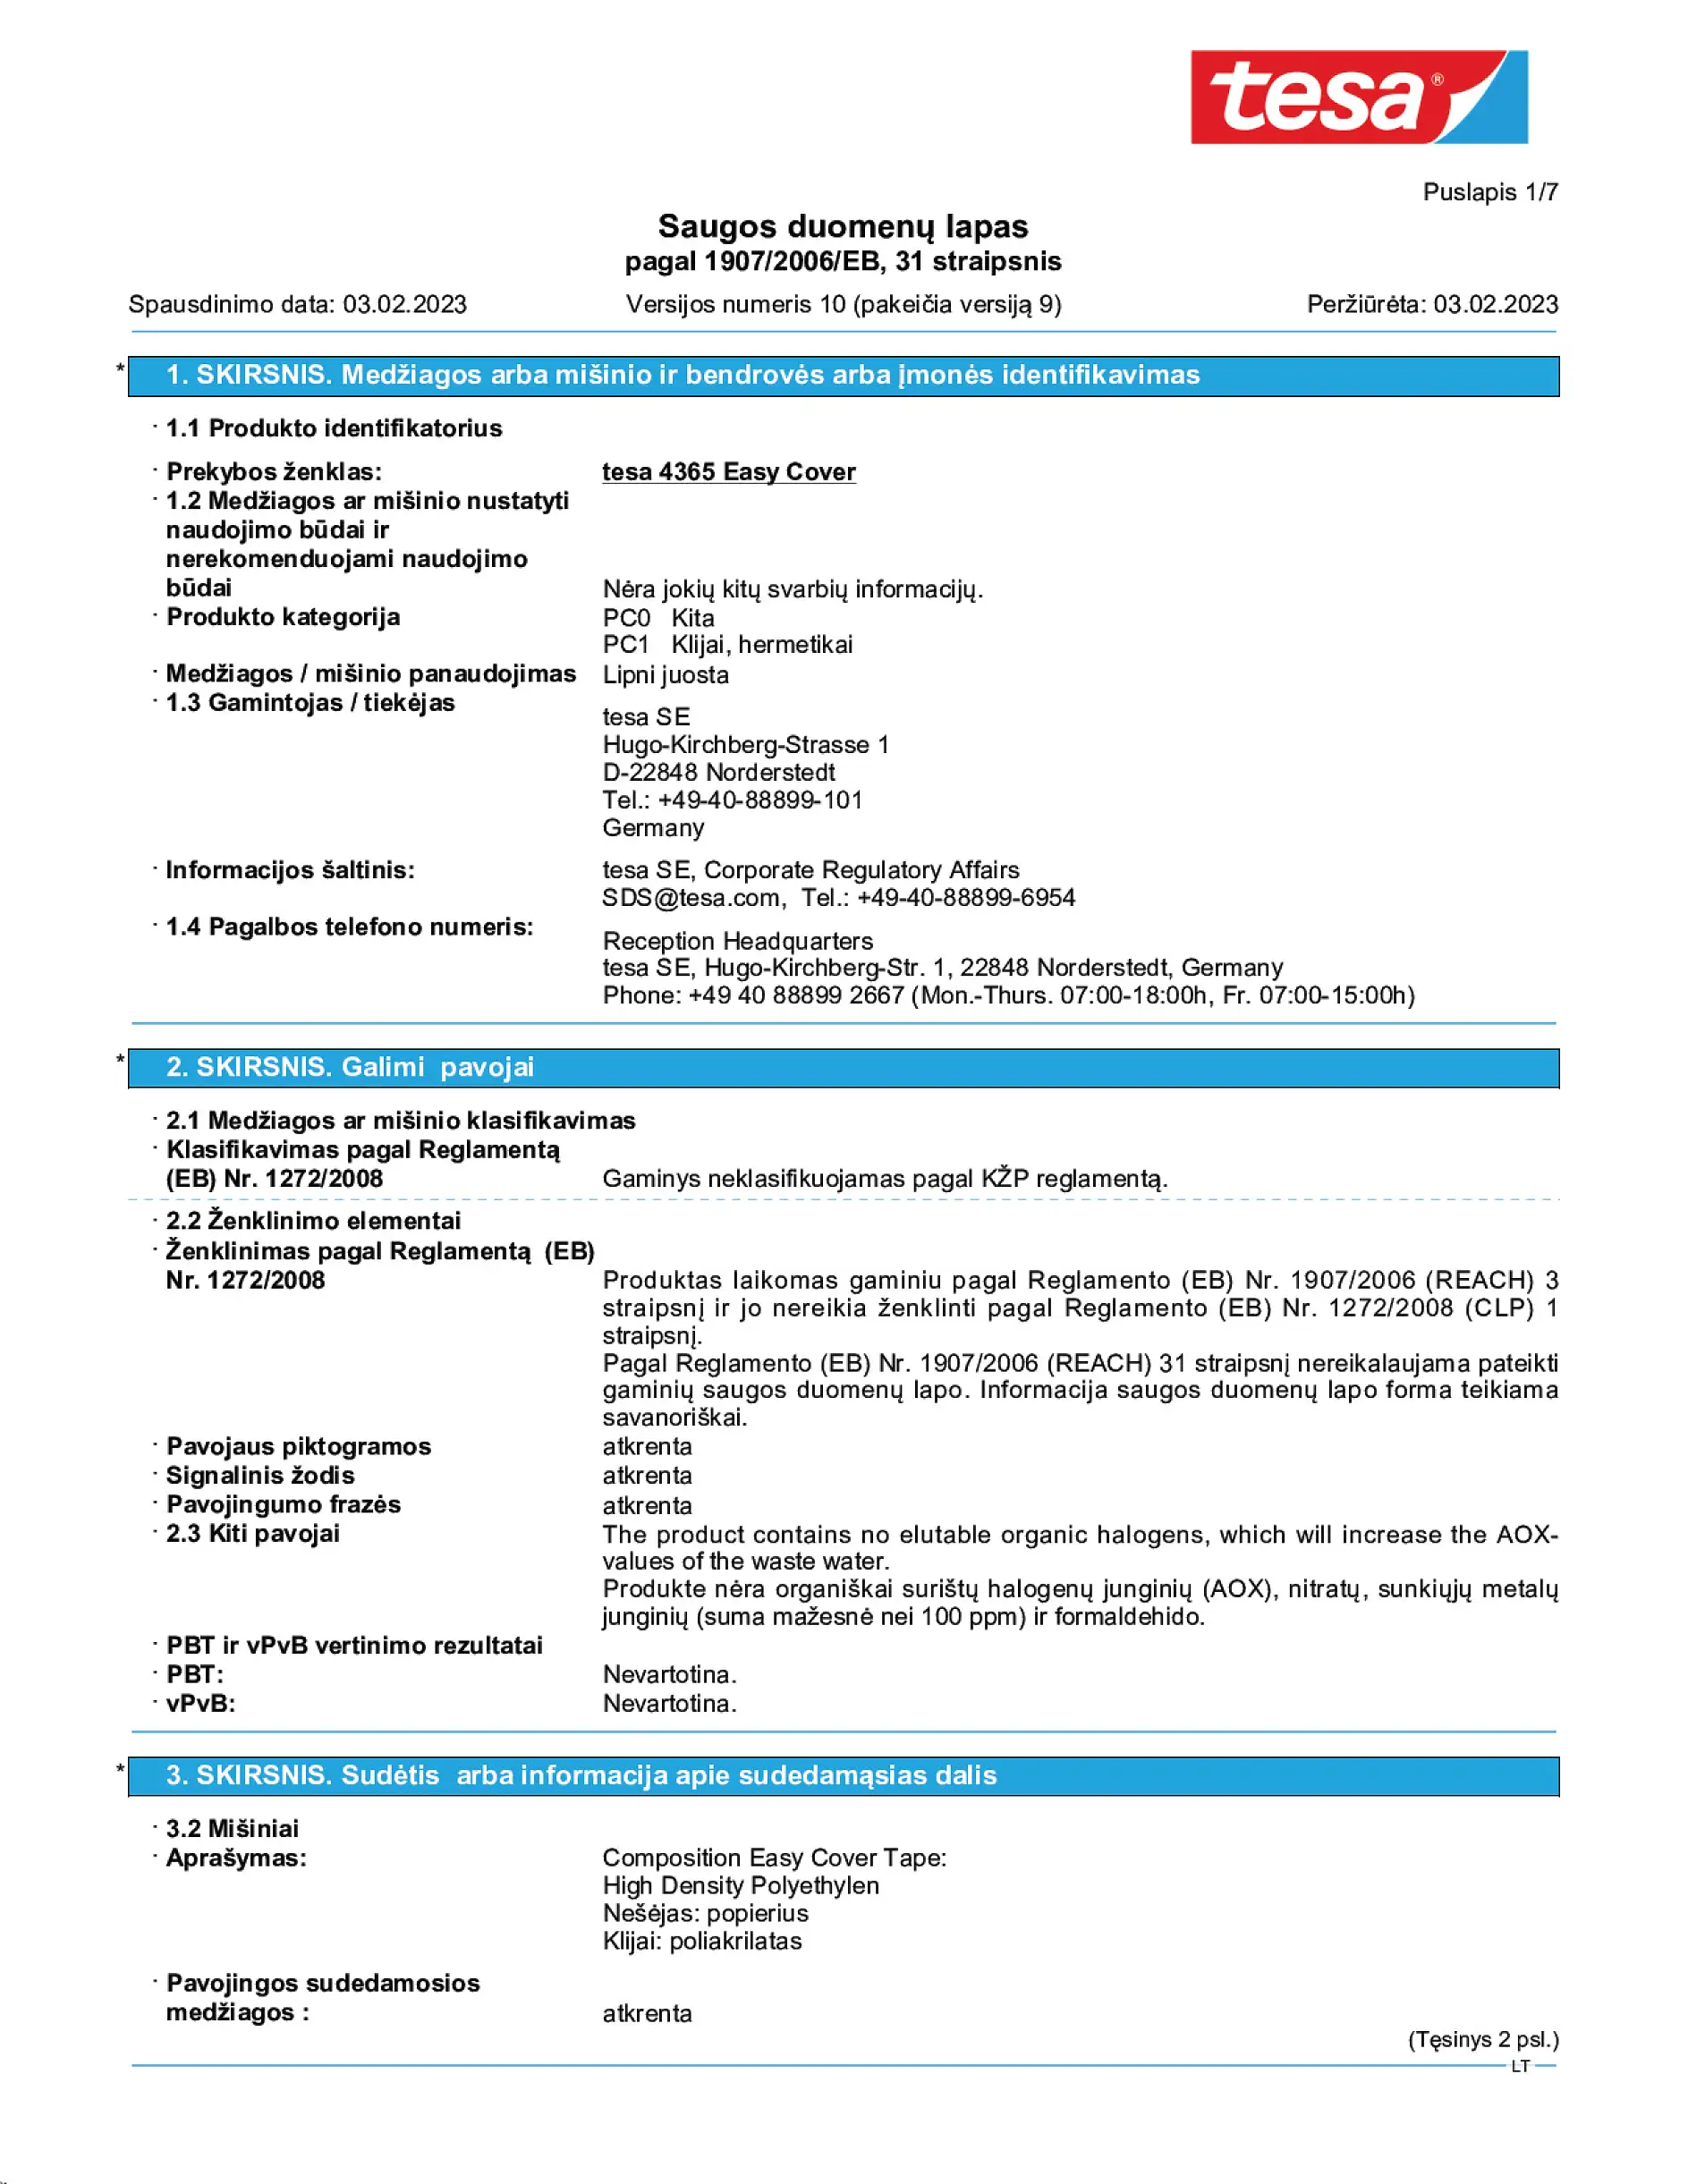 Safety data sheet_tesa® Professional 04365_lt-LT_v10